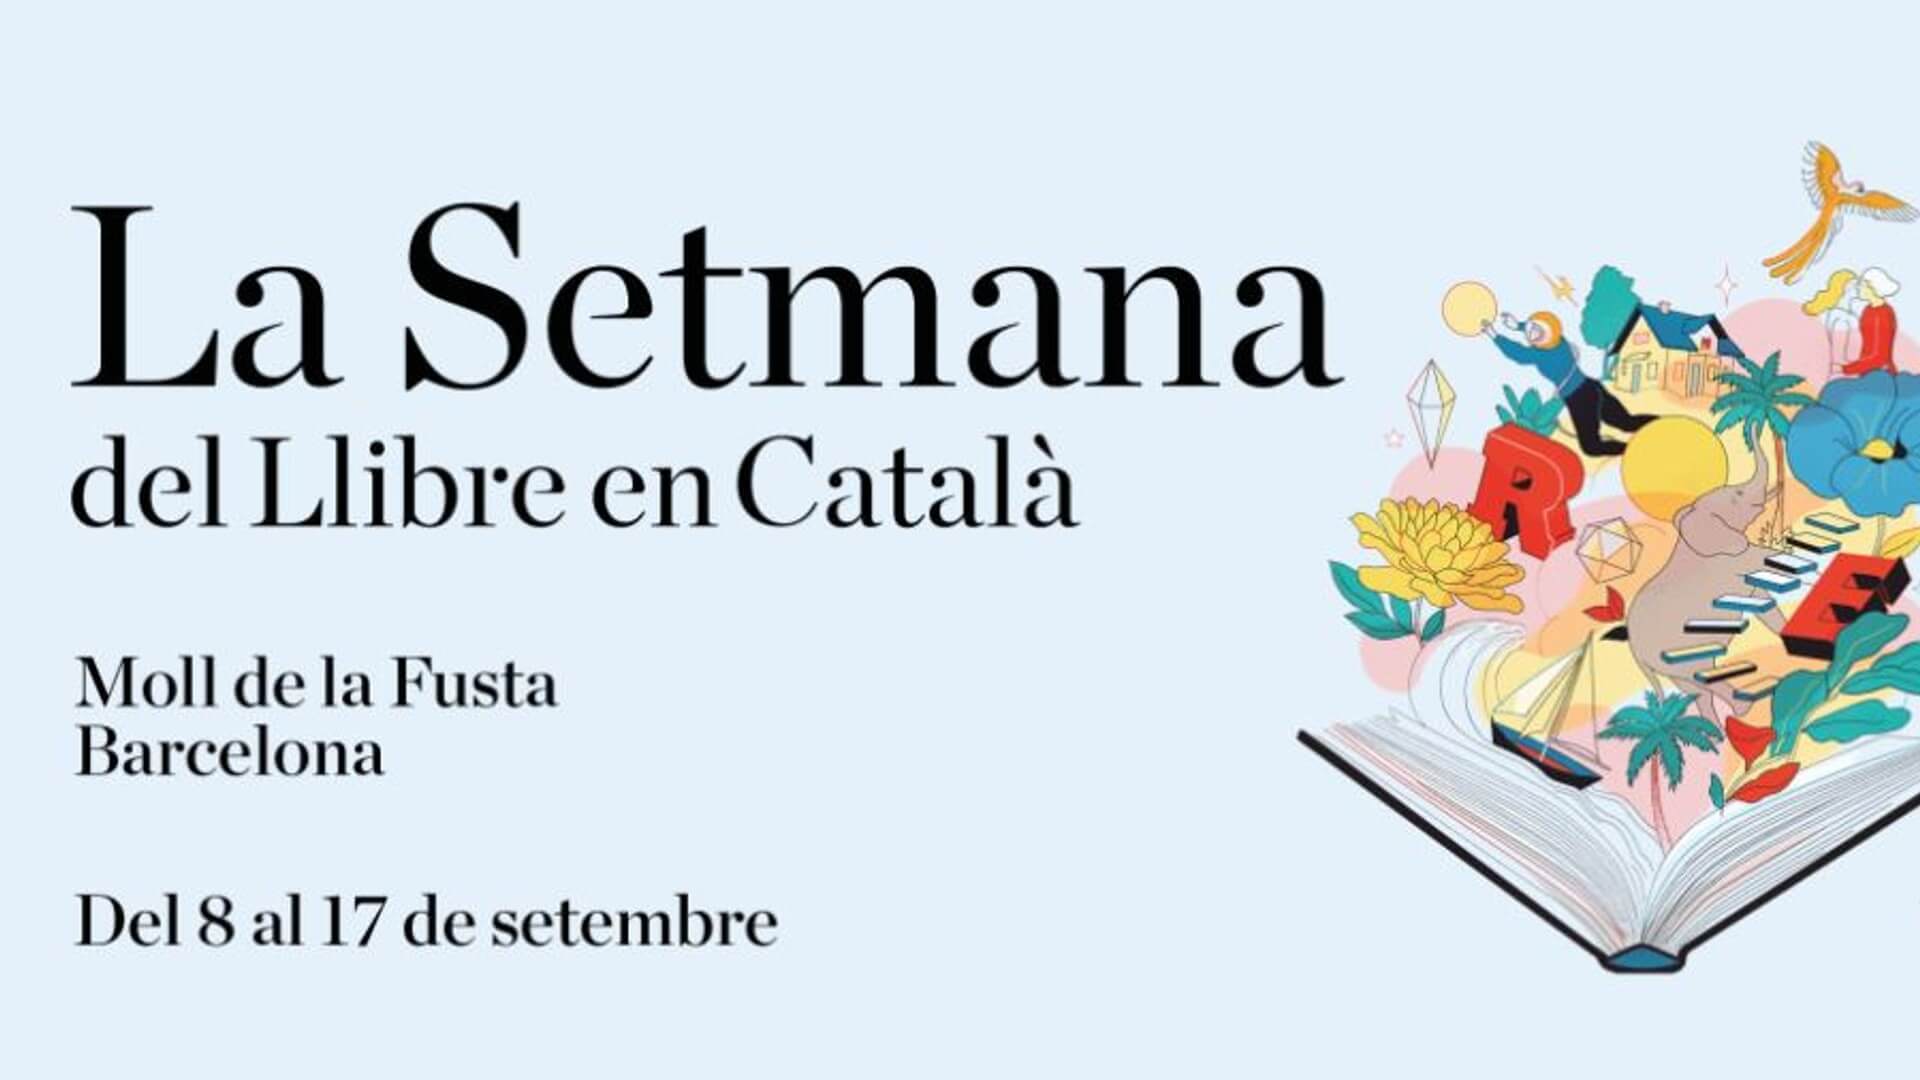 Hasta el 17 de septiembre “Setmana del Llibre en Català 2023” en el Moll de la Fusta